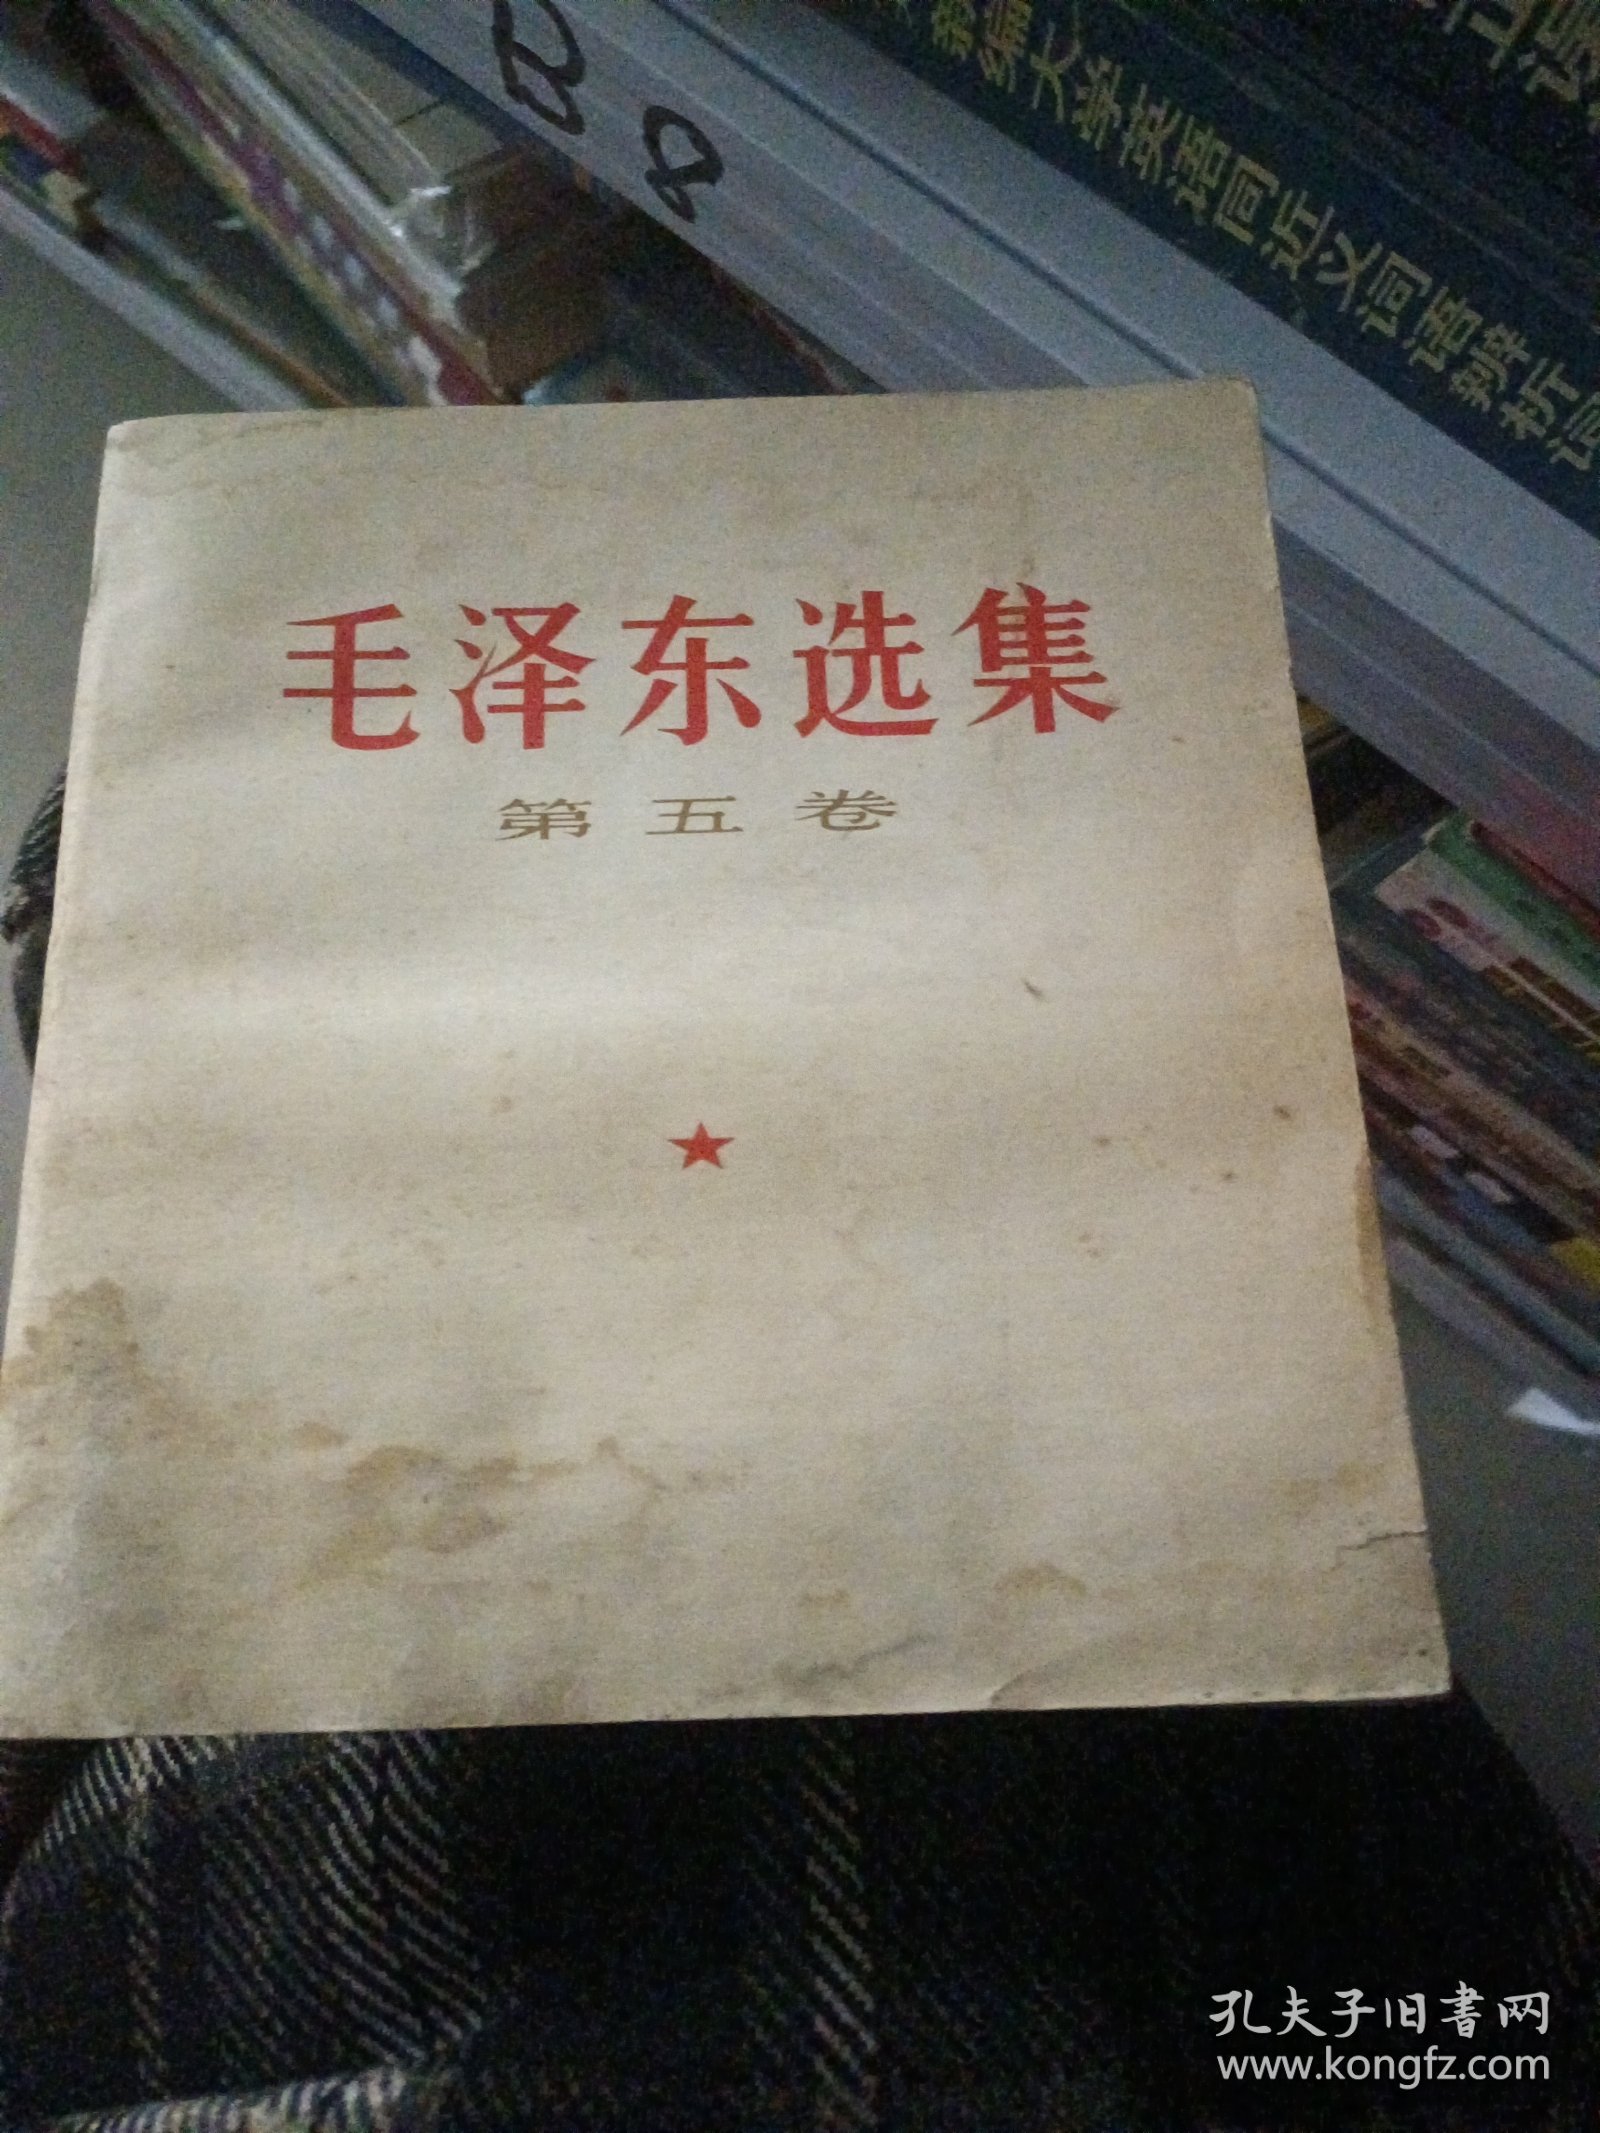 《毛泽东选集》第五卷。下书口有水渍。